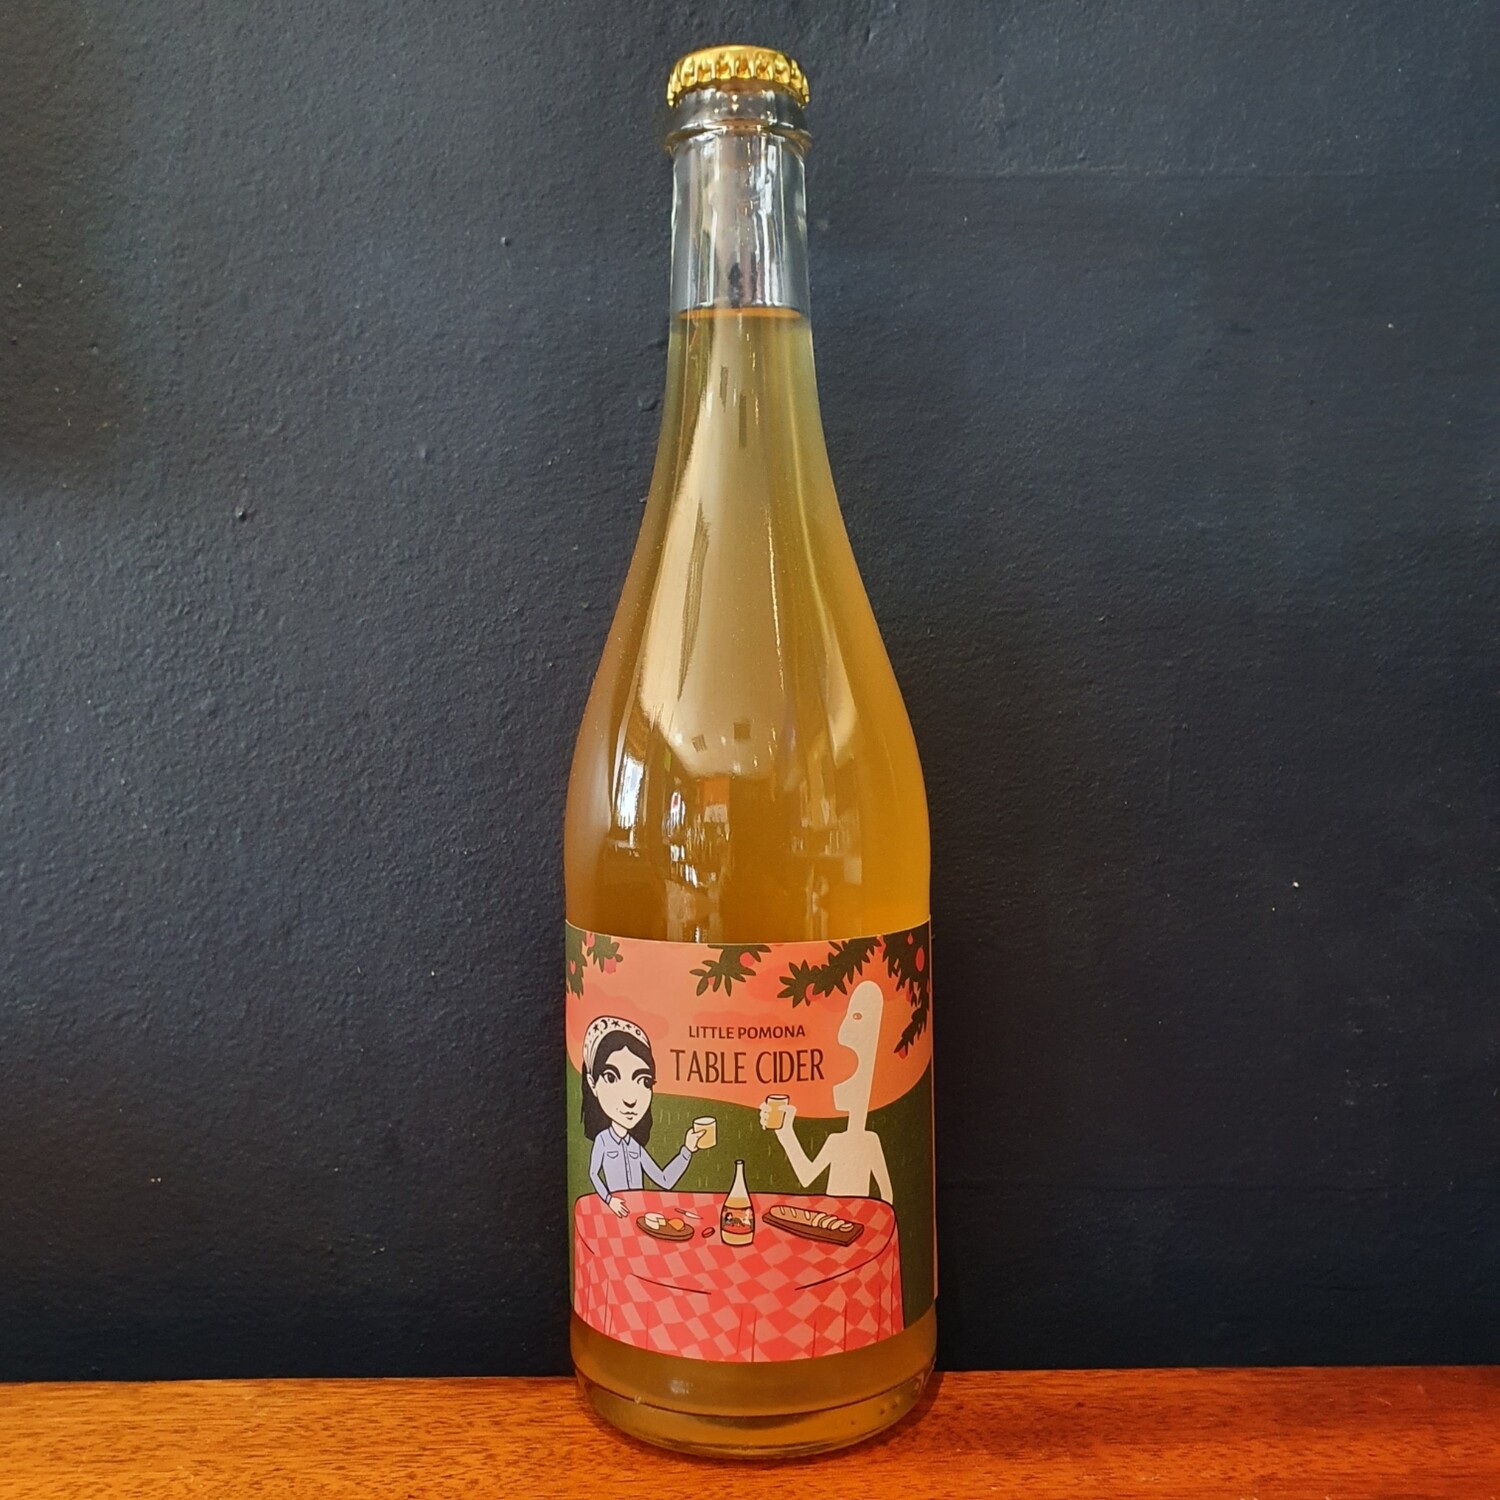 Little Pomona - Table Cider 2019 (750ml)